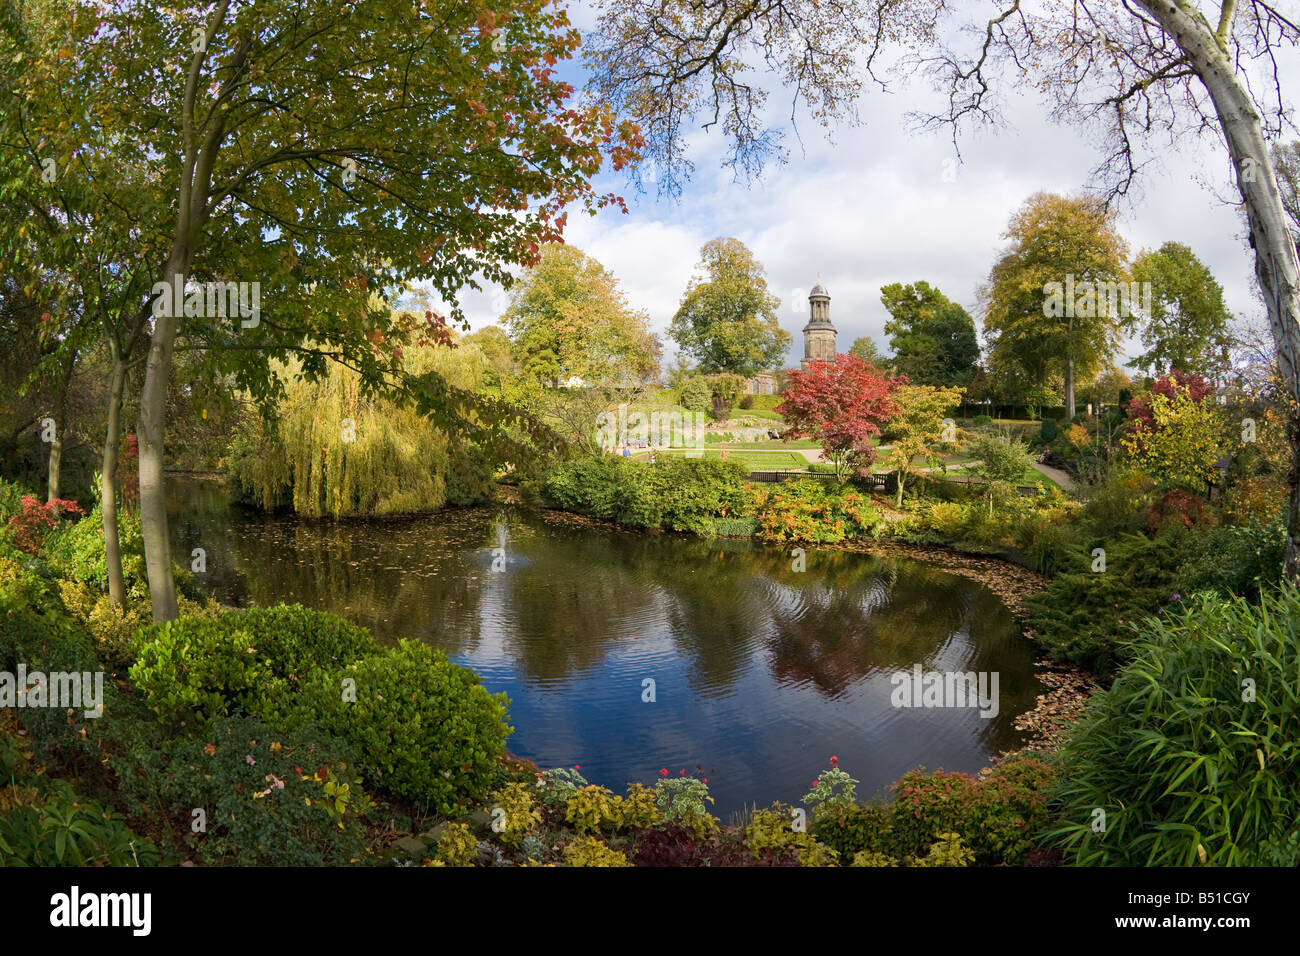 Église St Chads et le jardin ornemental de Dingle dans la carrière Park SHREWSBURY Shropshire England UK Royaume-Uni GB grand T0 Banque D'Images